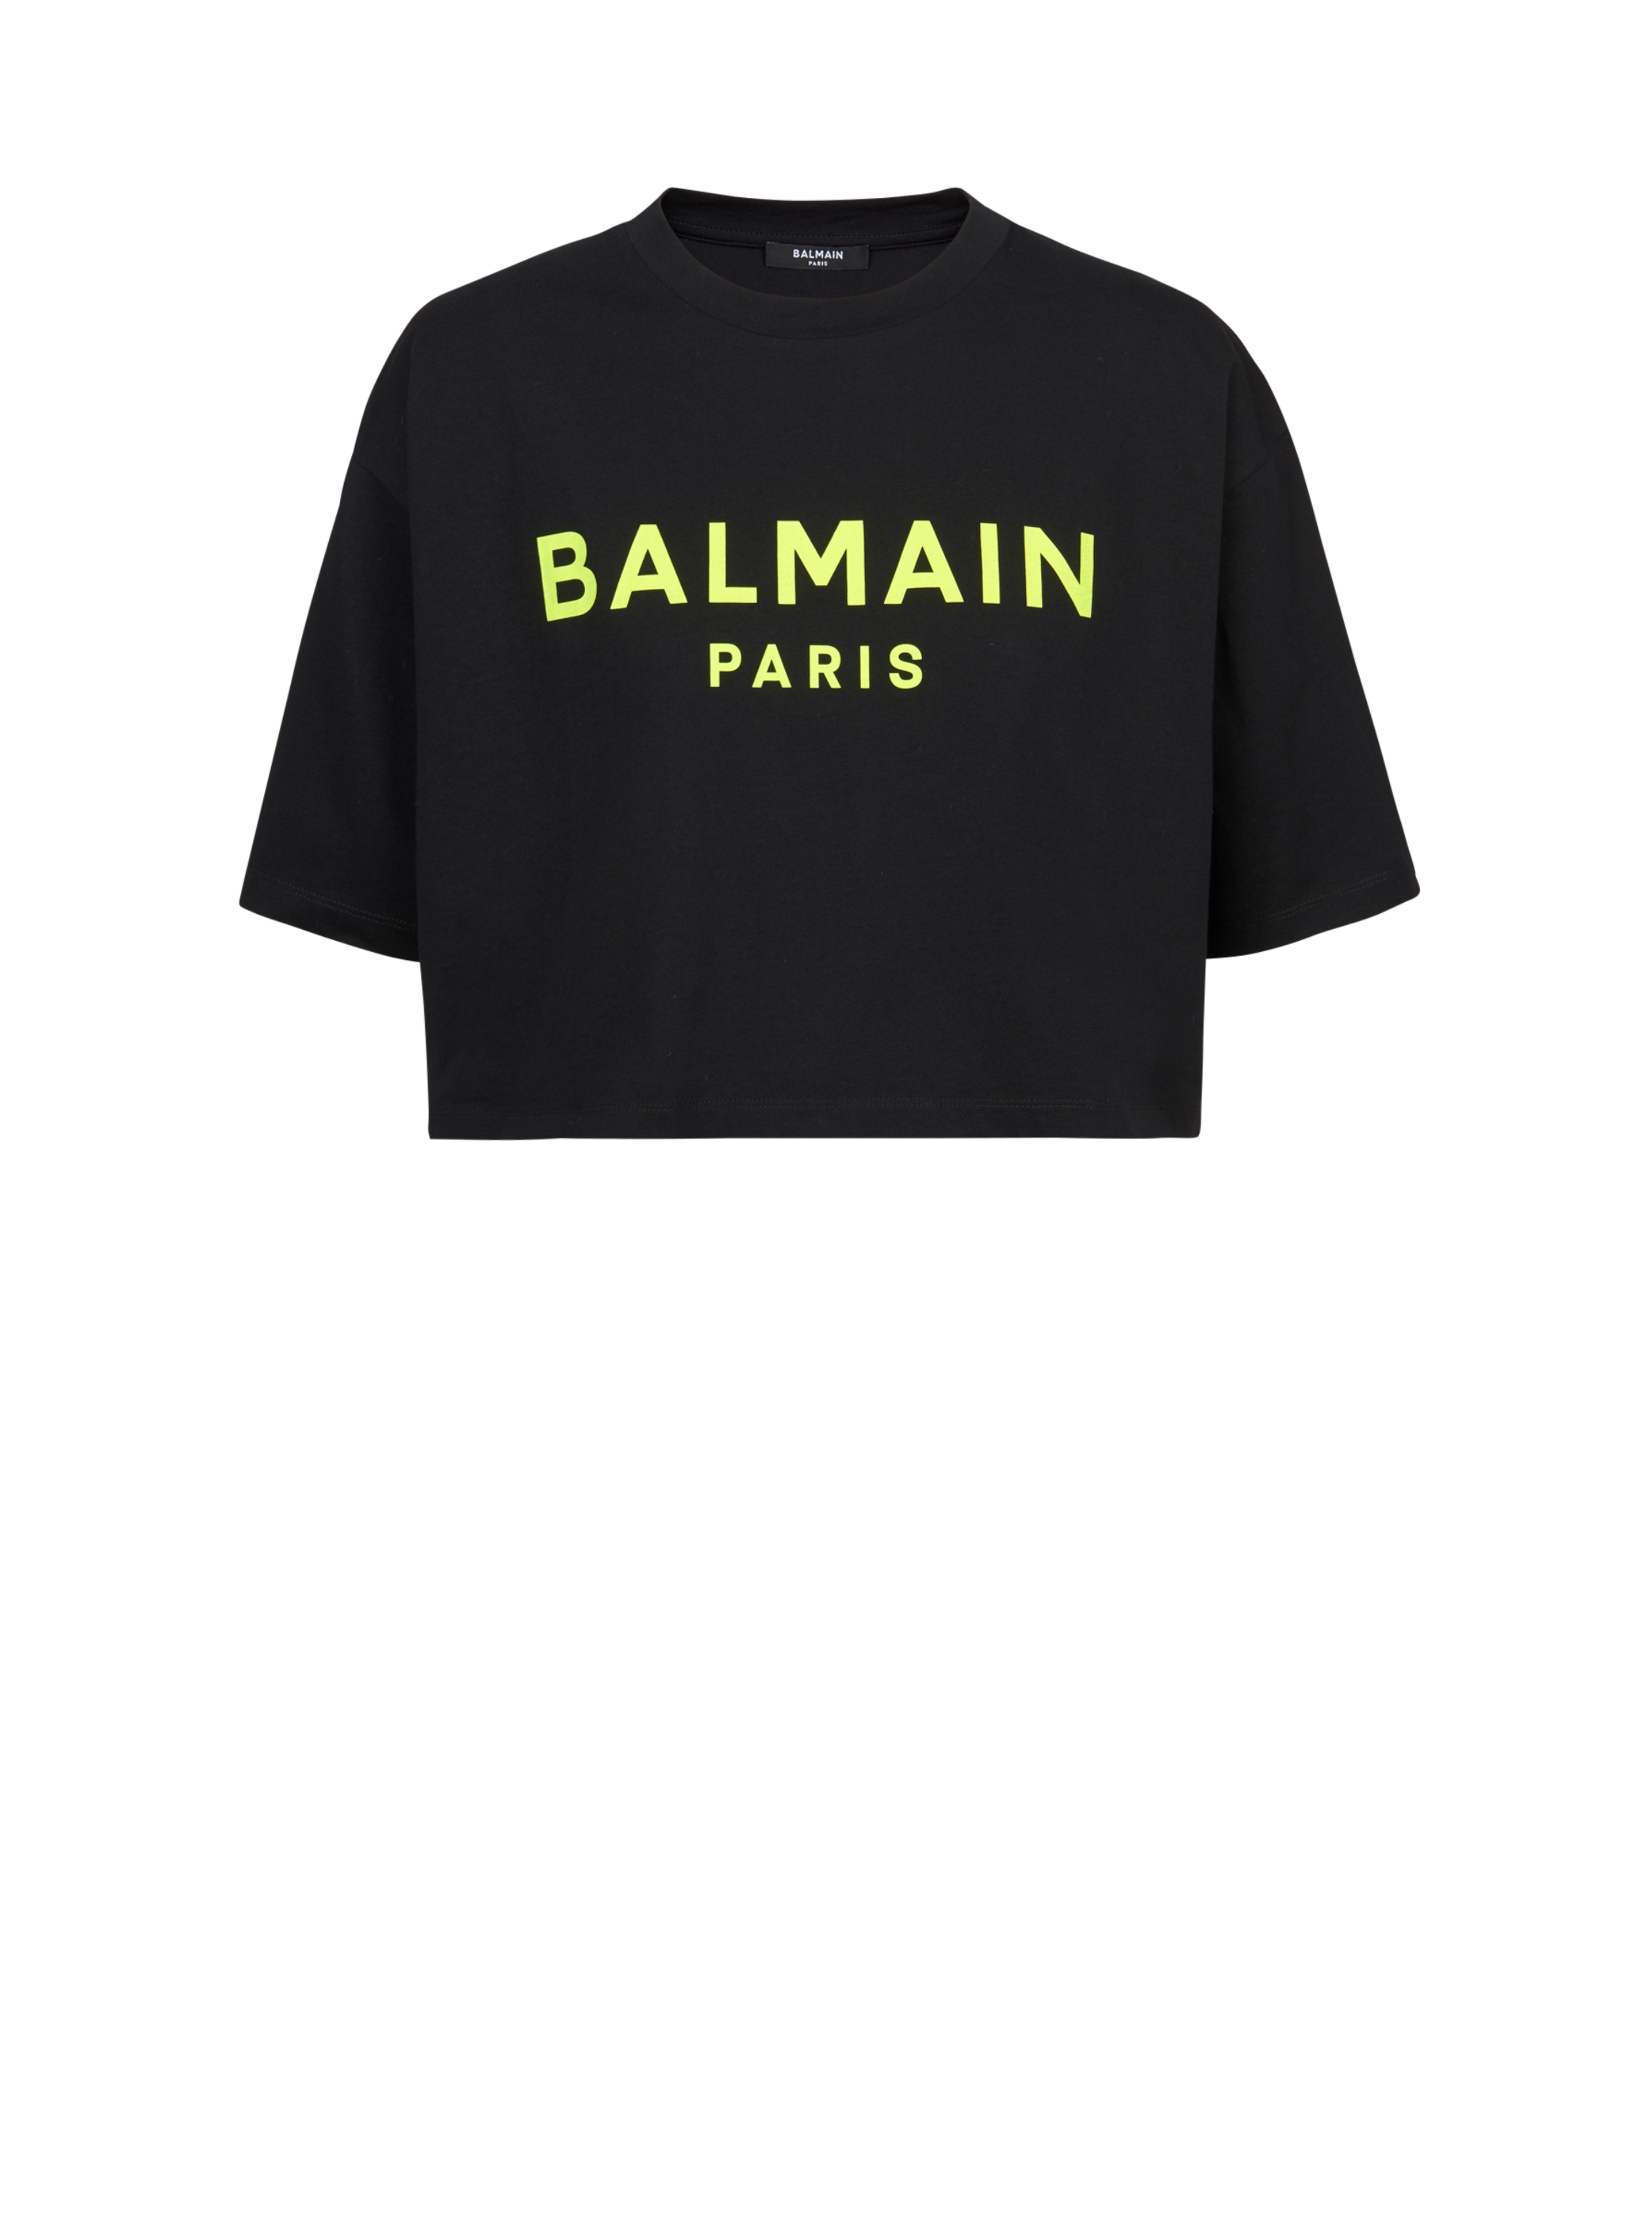 T-shirt corta in cotone con logo Balmain, giallo